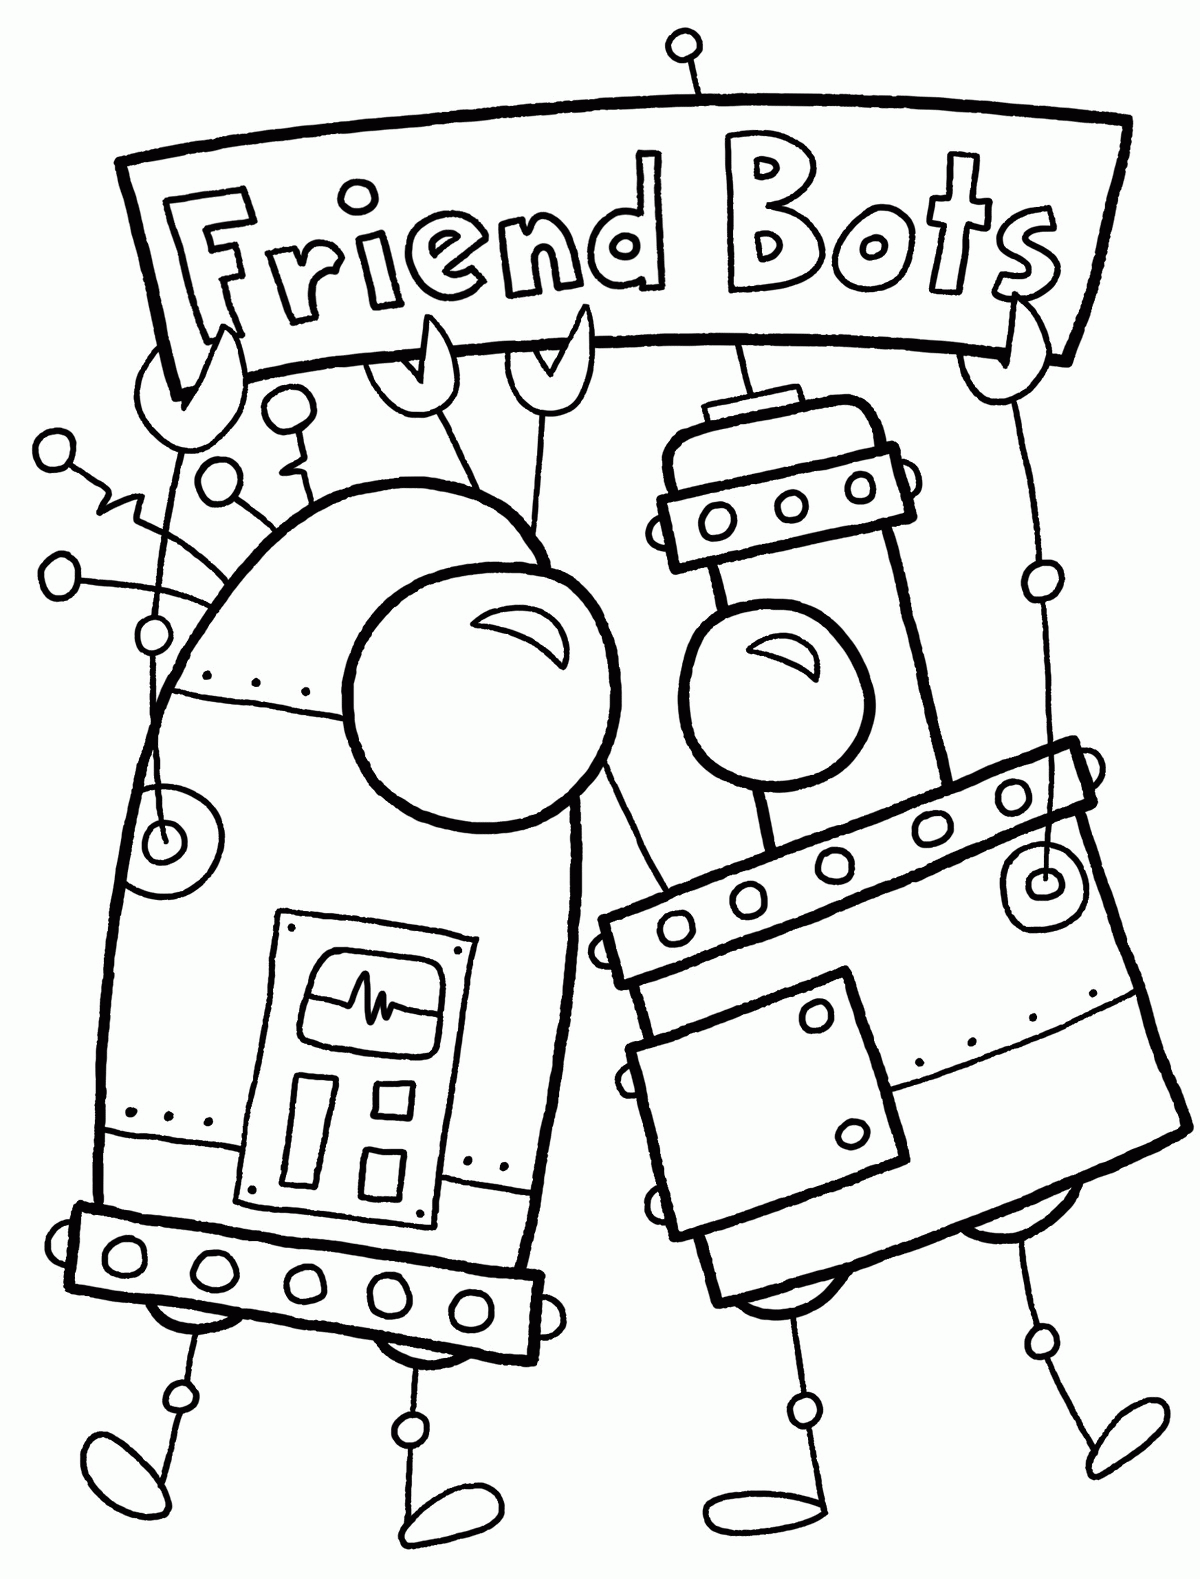 Freundschafts-Bots